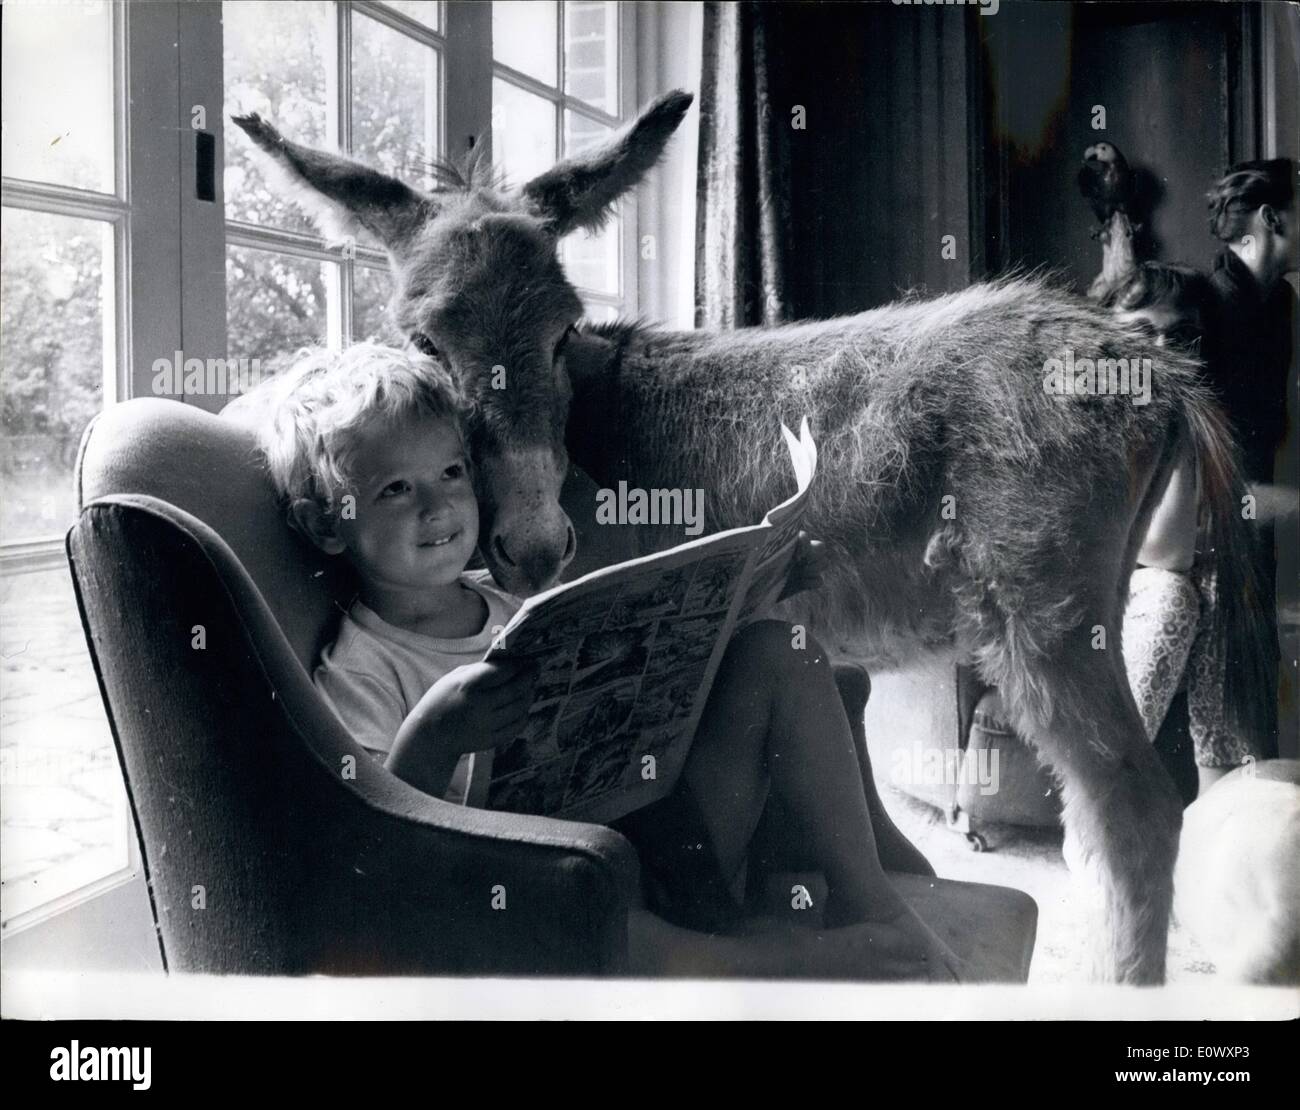 6. Juni 1964 - der Trendsetter bei Haustieren... '' BETTINA.'' - die MINI Esel treffen Mini machen... Sie ist BETTINA, der Esel nicht größer als ein großer Hund... Nur 3ft, vom Huf Schultern hoch... BETTINA, im Bild mit ihrem jungen Freund RICHARD BORWIOX, ist der letzte Schrei in Haushalt, übernahmen eine pioneerin Erhöhung der Statue von Eseln aus Lasttiere für verwöhnte Haustiere. Eine Earuaot Hilfe wünschen Esel, aber sie sind in der Regel ein wenig zu groß, als Haushalt Haustiere keine oder ROBIN BORITICK bekam, um das Problem kümmern und -BETTINA produziert. Ihre Mutter war eine normale Ari Esel aus Irland. Vater co Stockfoto